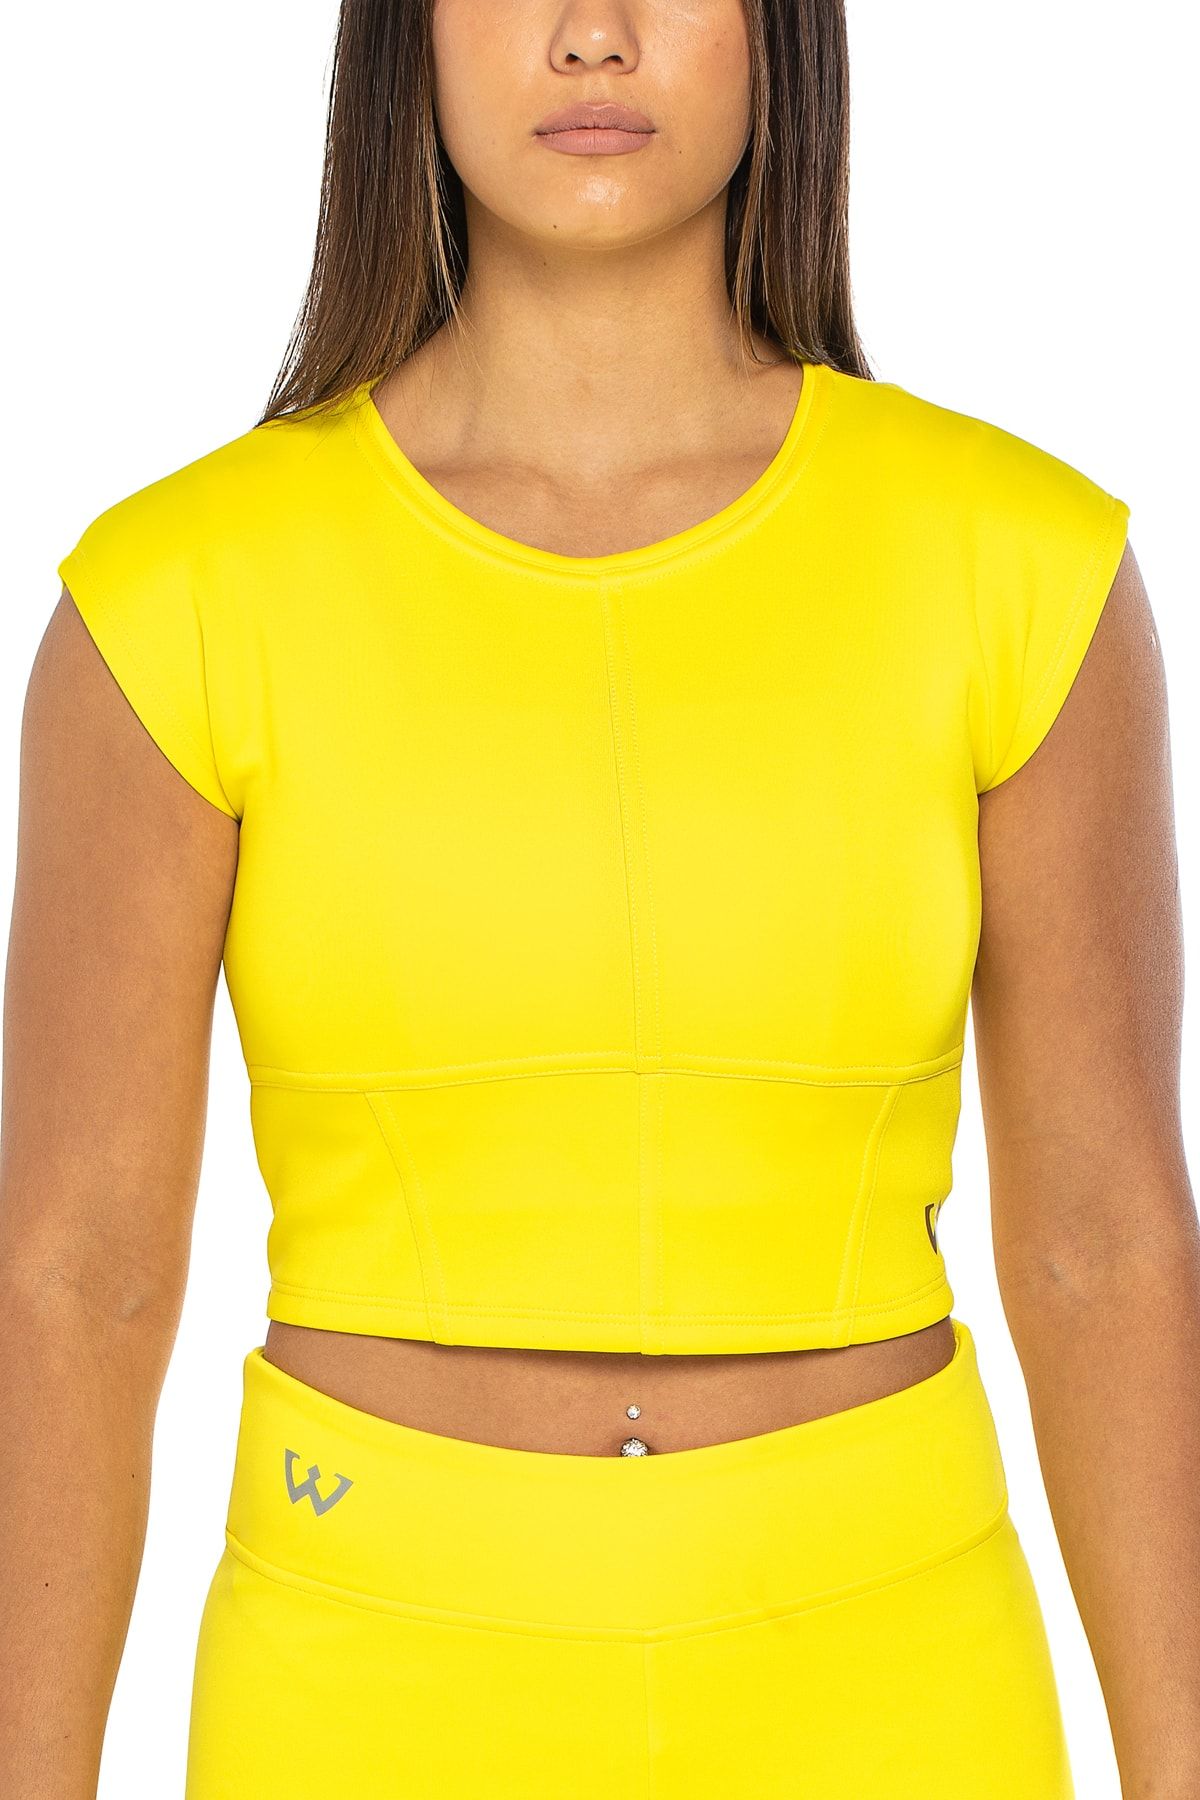 Wiawi Kadın Spor Fit Rahat Tişört Esnek Crop Top - Sunlight Sarı